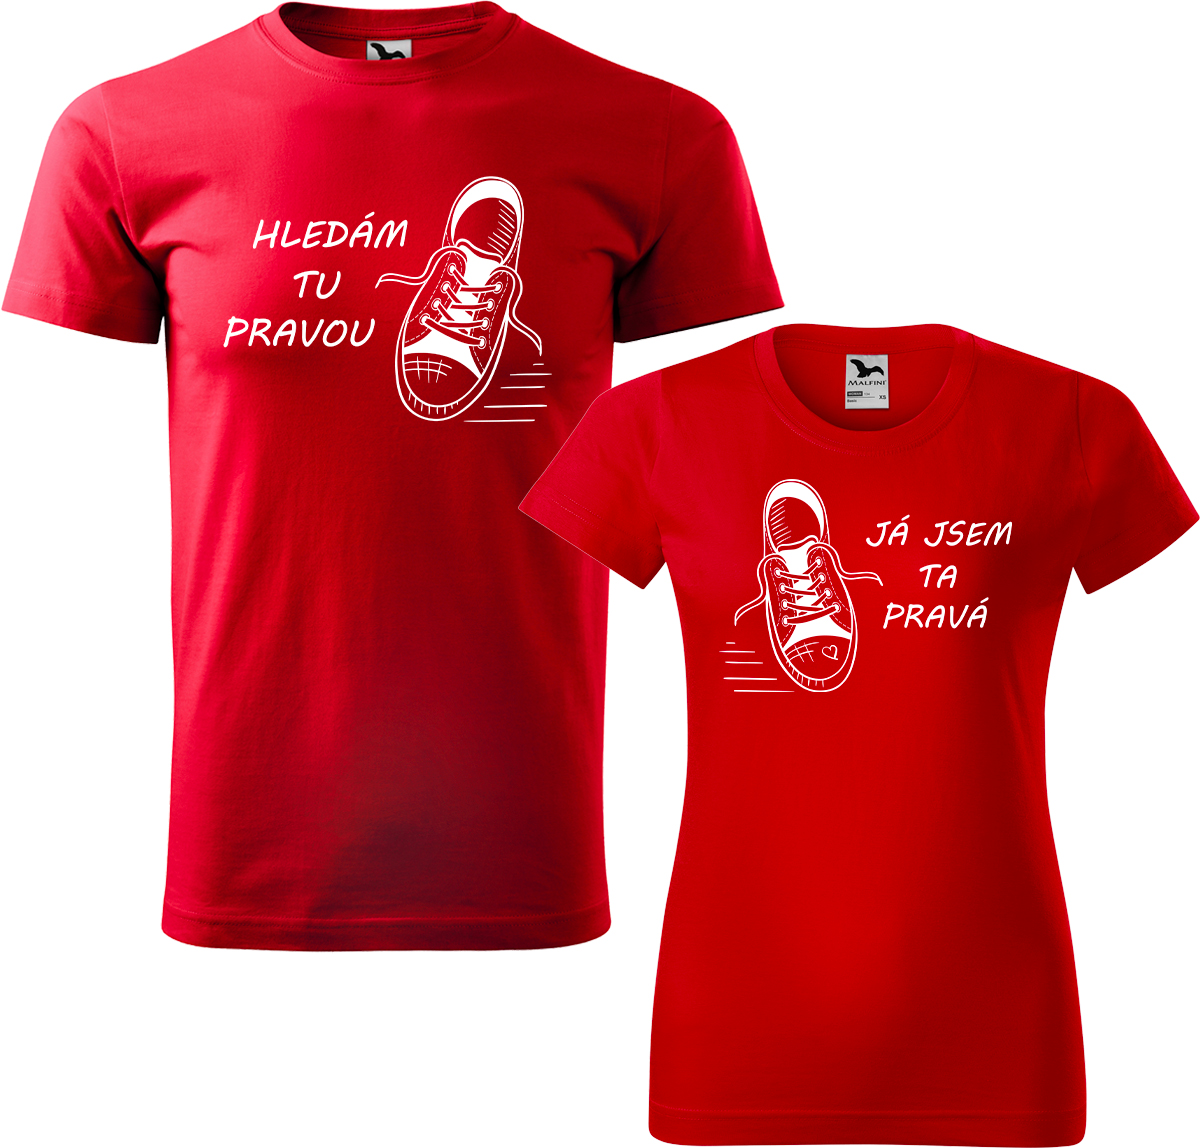 Trička pro páry - Kecky Barva: Červená (07), Velikost dámské tričko: S, Velikost pánské tričko: XL